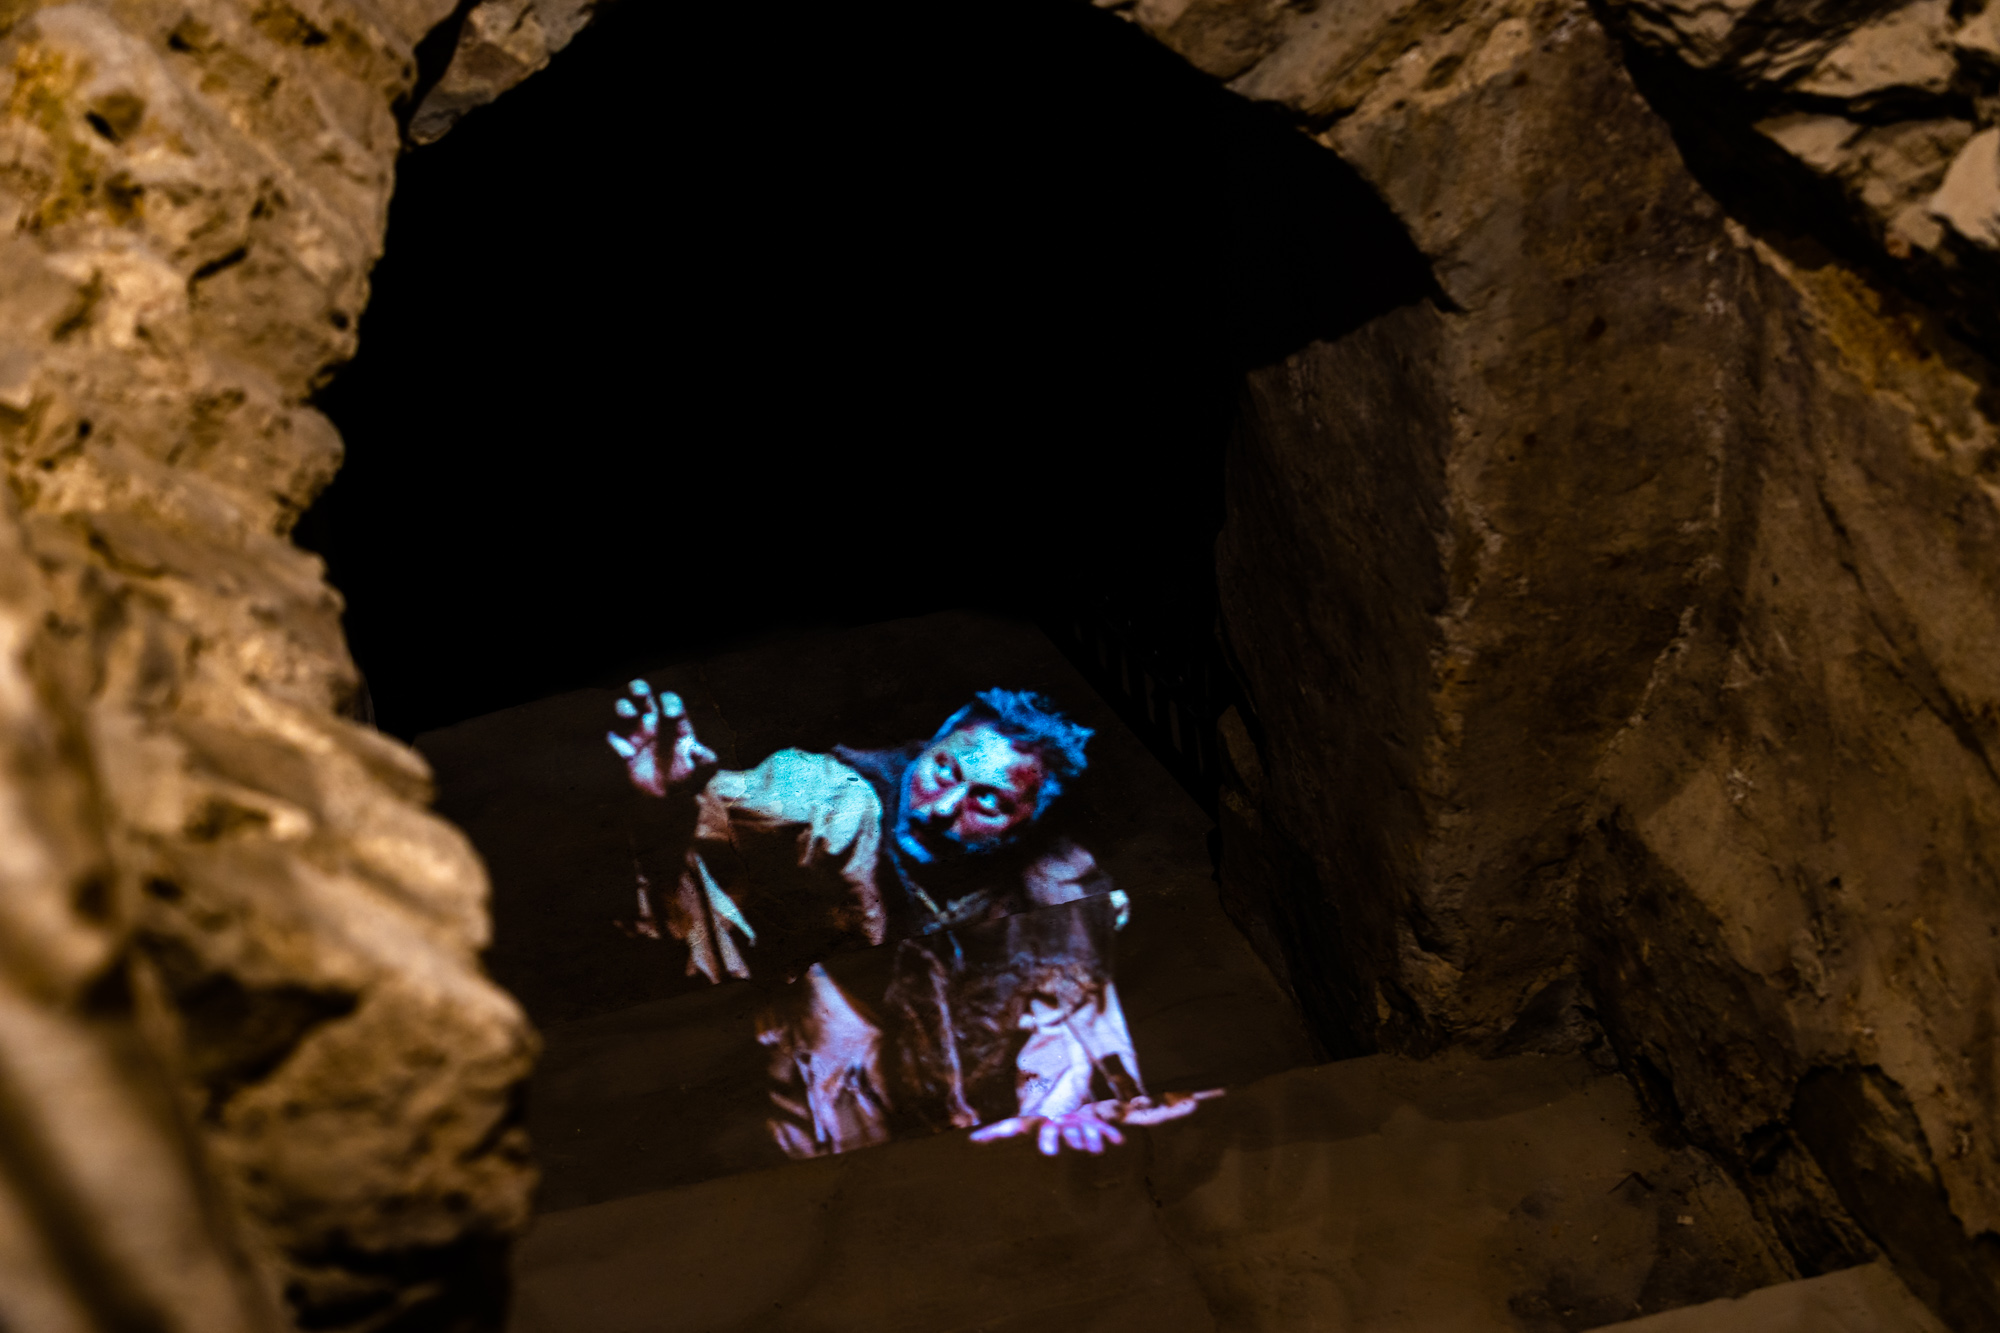 Nieoświetlony korytarz podziemi, z którego wyłania się hologram postaci mężczyzny wyciągającego rękę